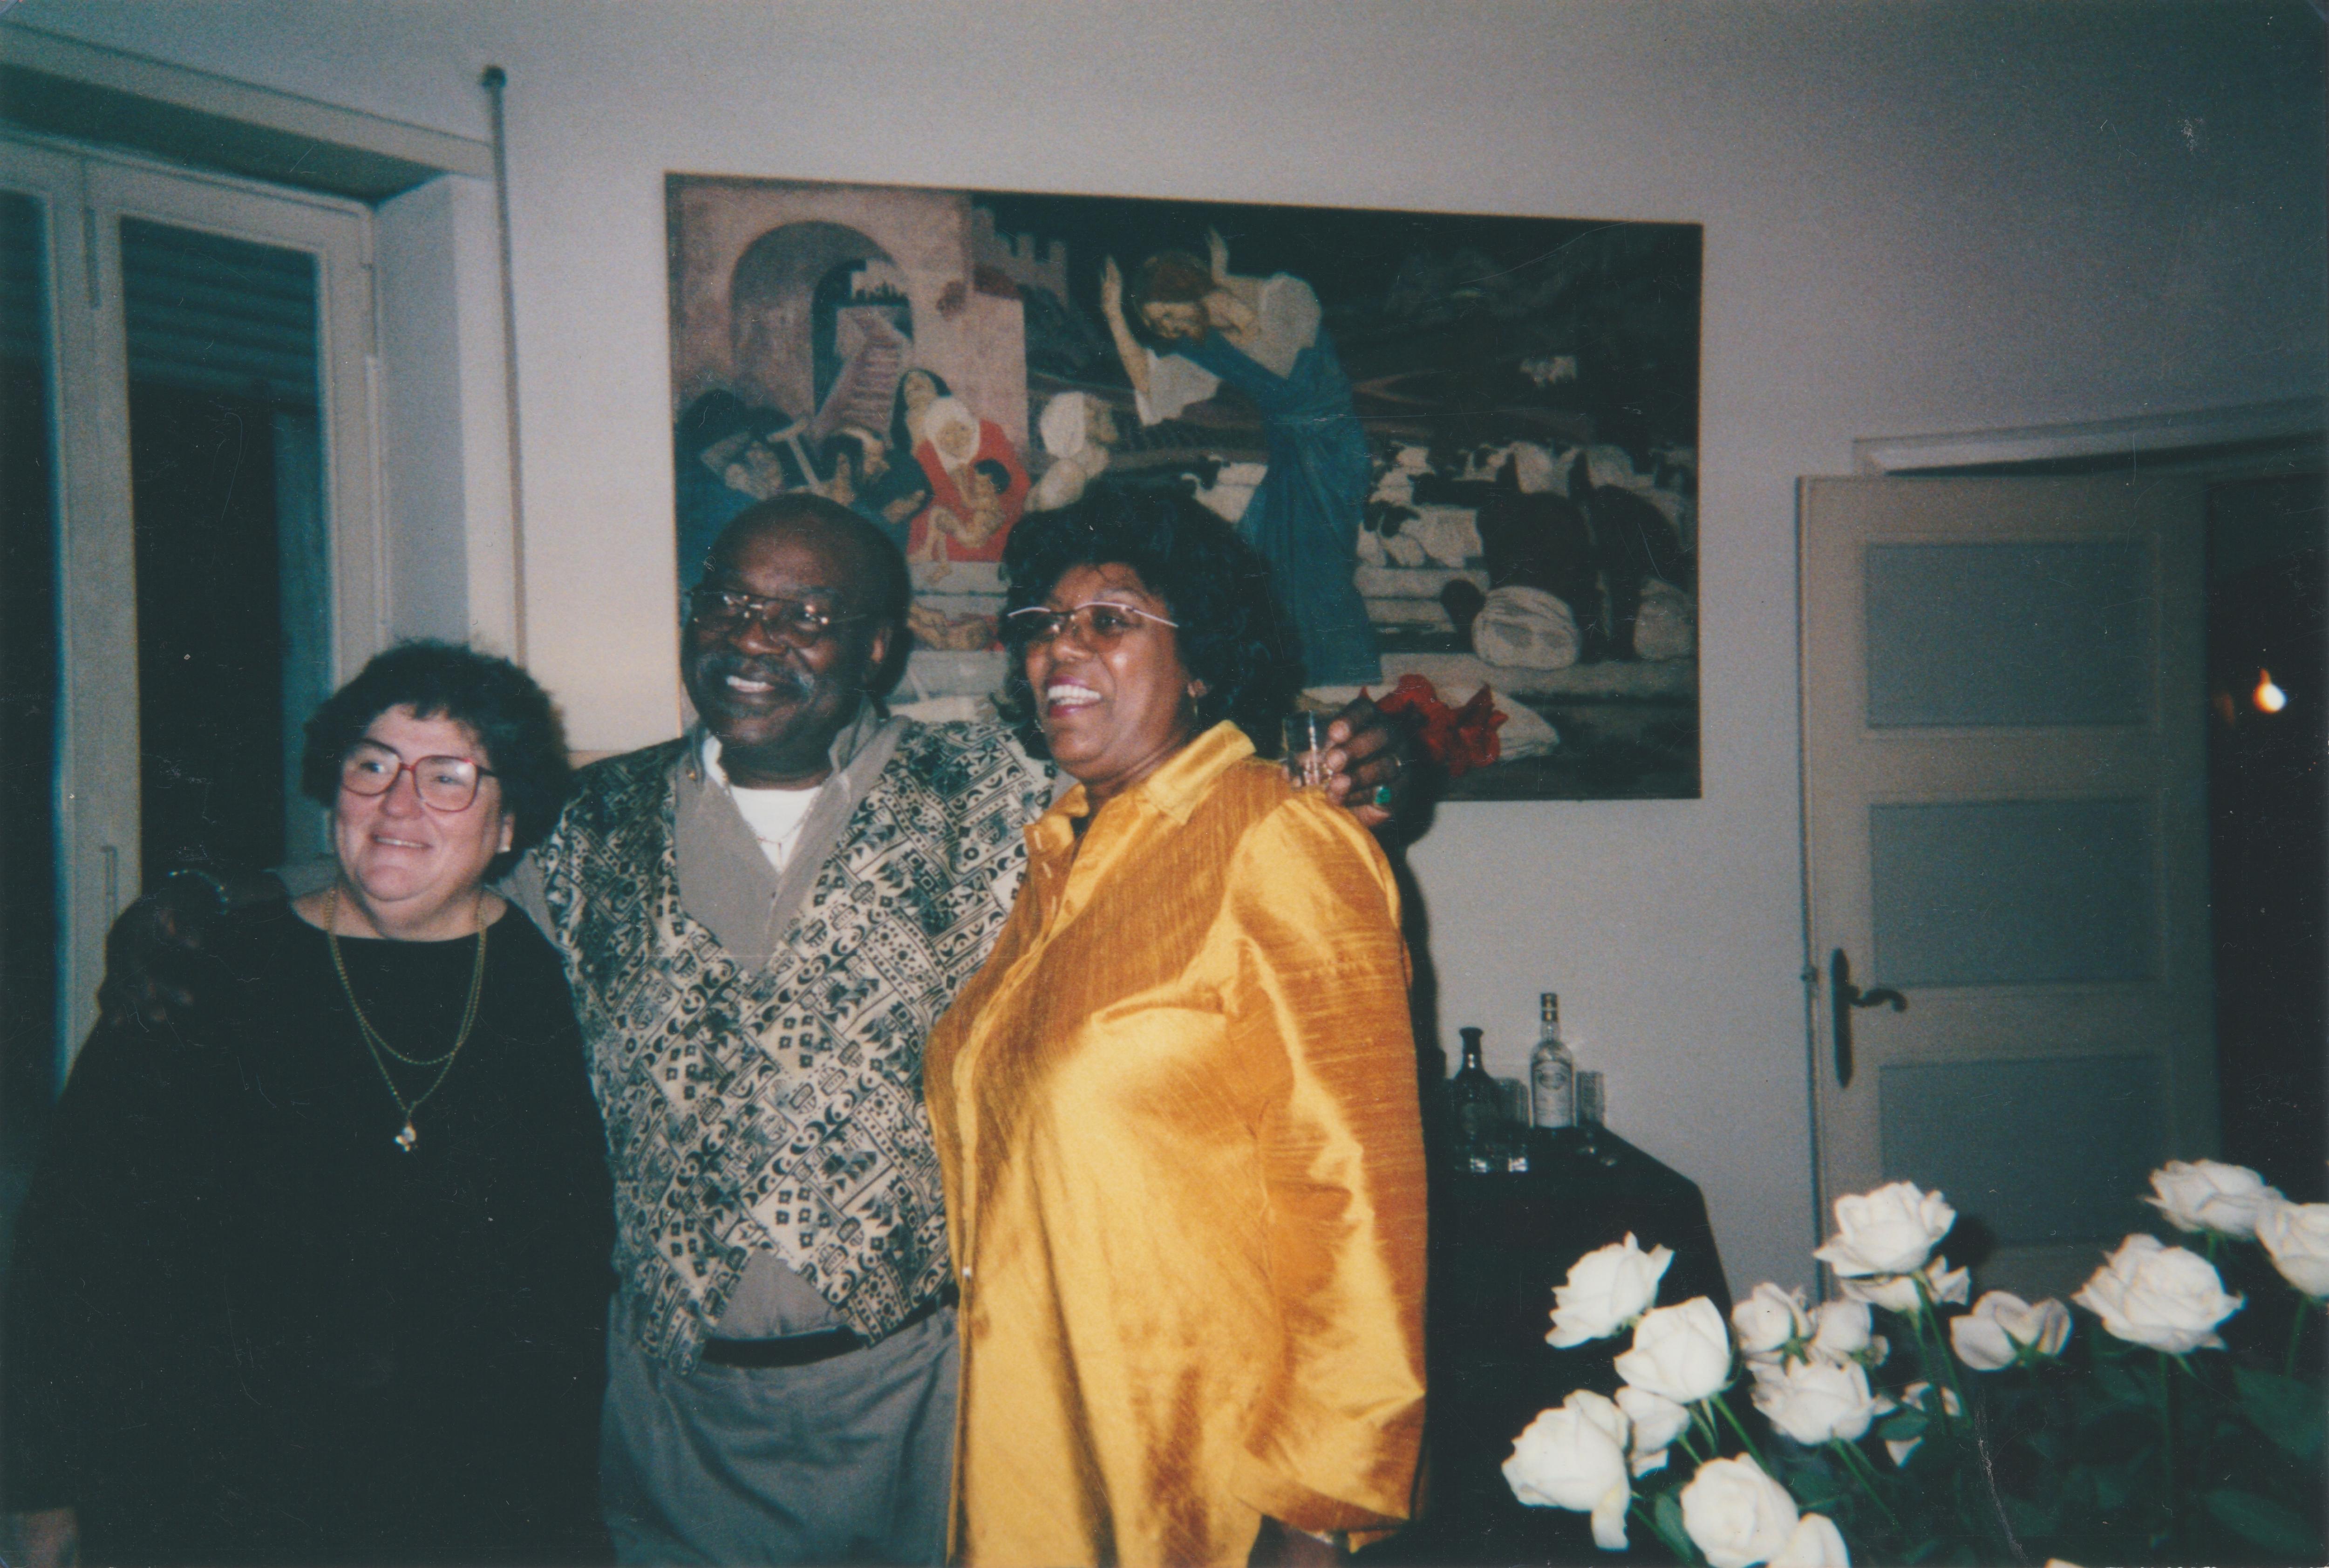 Elizabeth Fink (left) and Frank "Big Black" Smith (center).